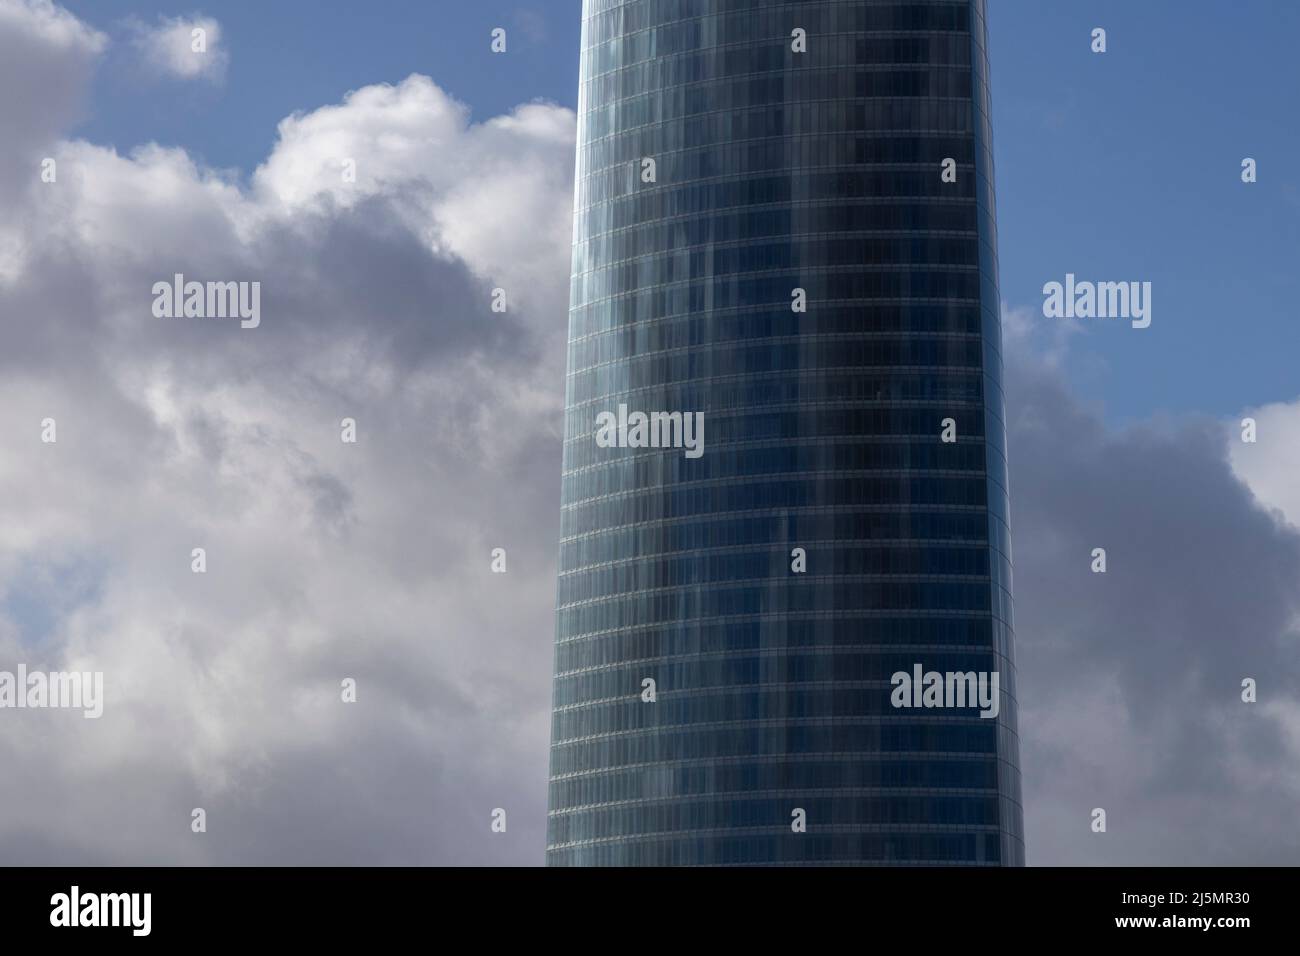 gratte-ciels de bureau à bilbao avec un ciel nuageux Banque D'Images